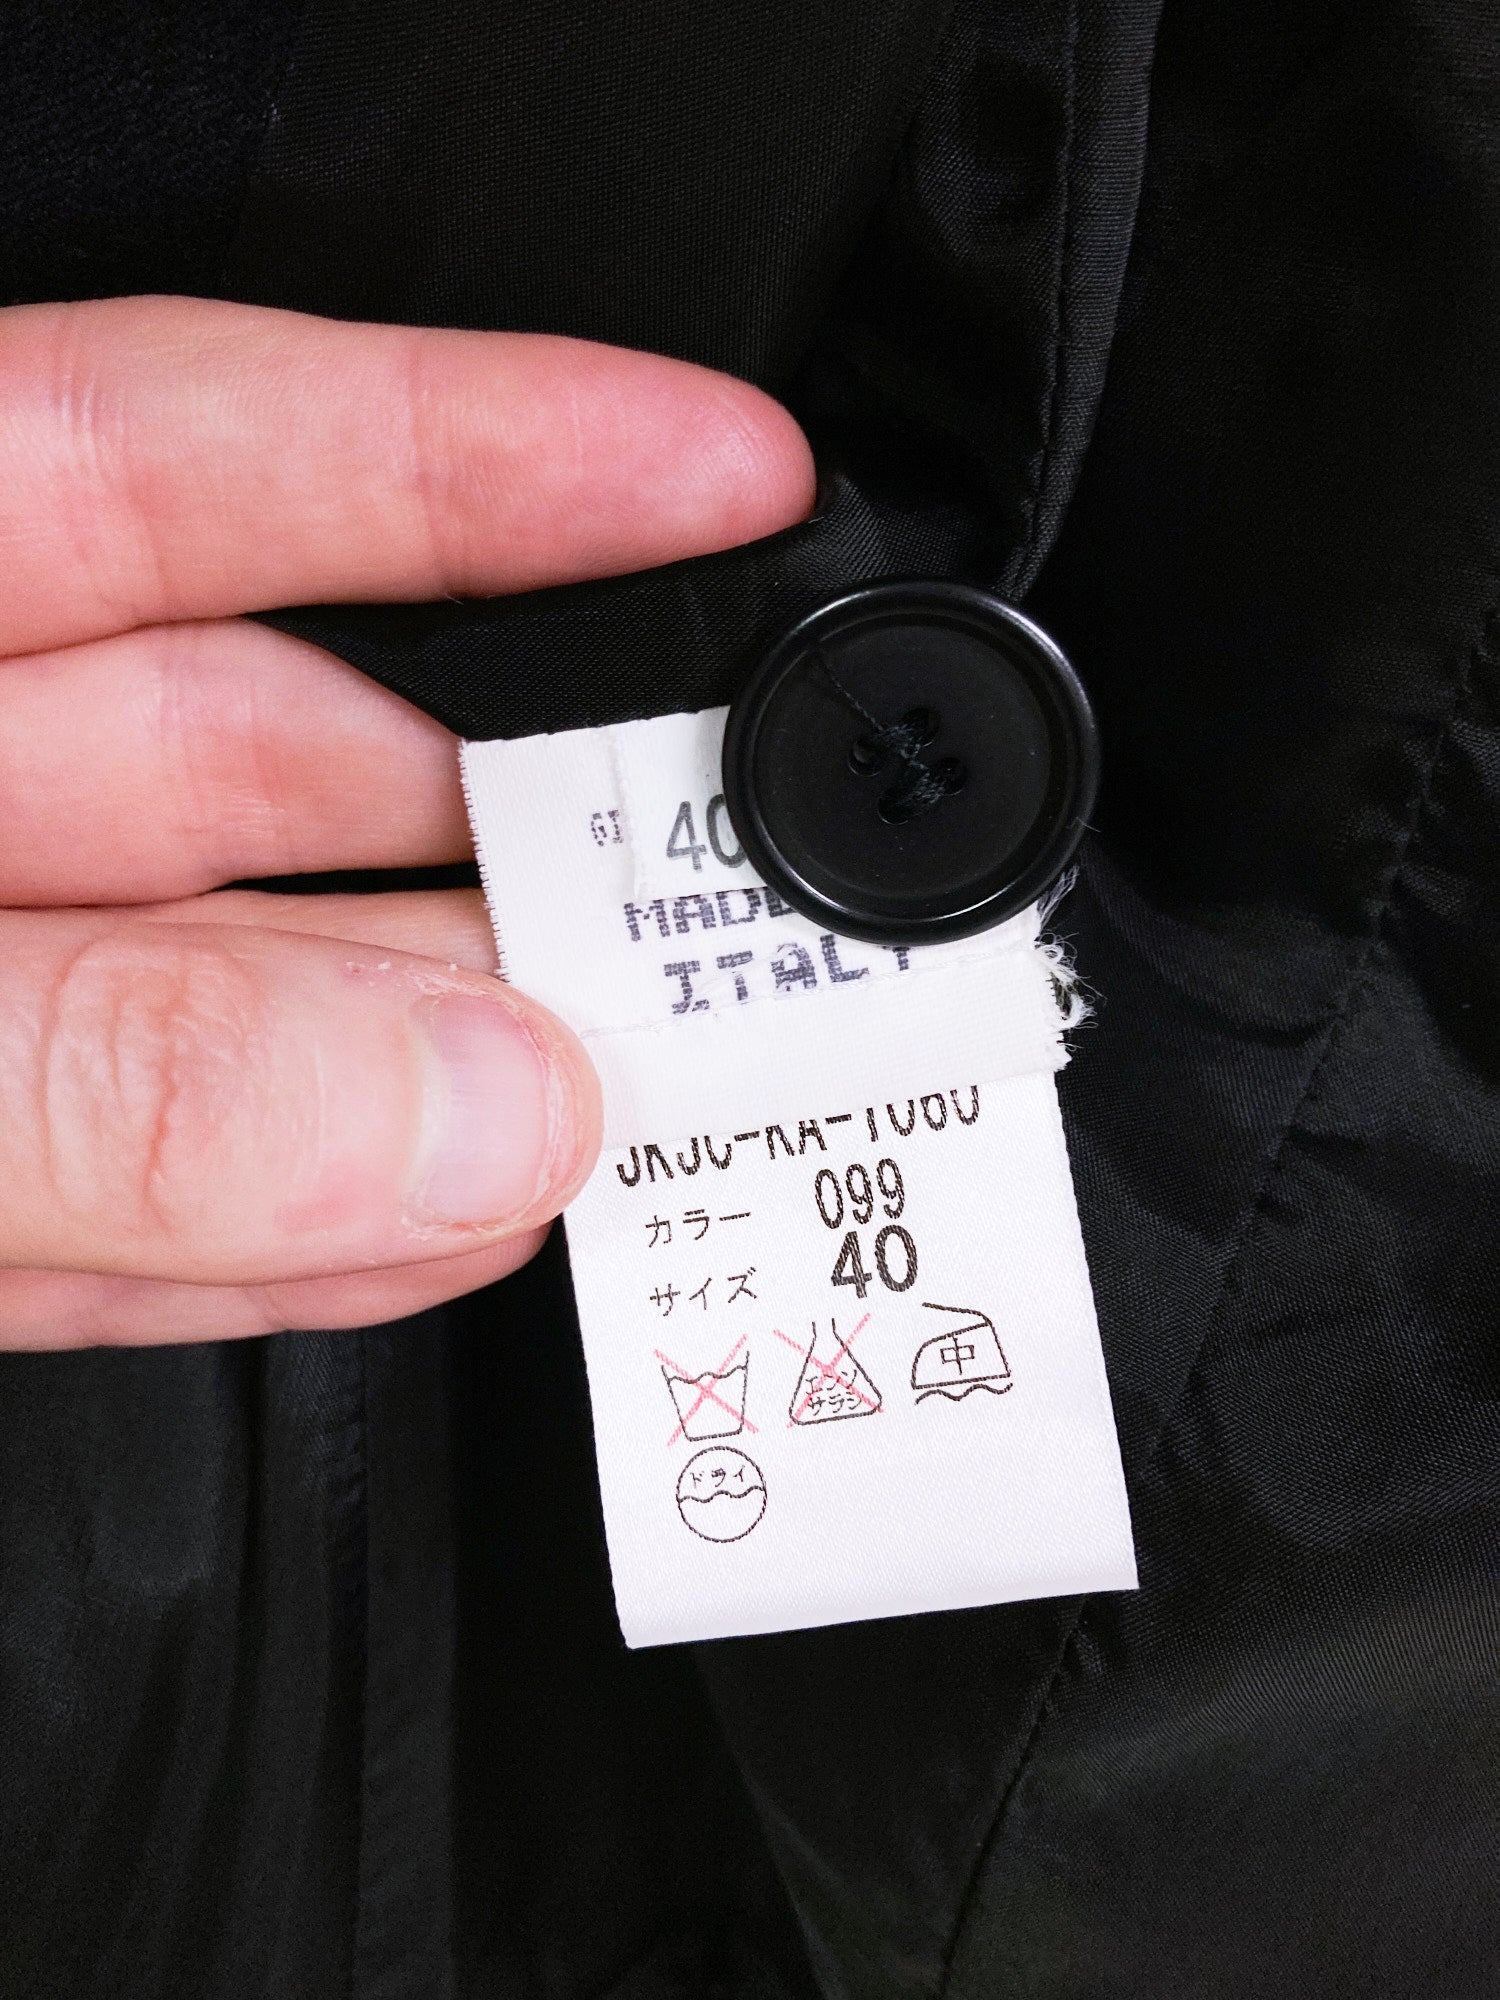 Jean Colonna black woolen three button blazer with sleeve tucks - size 40